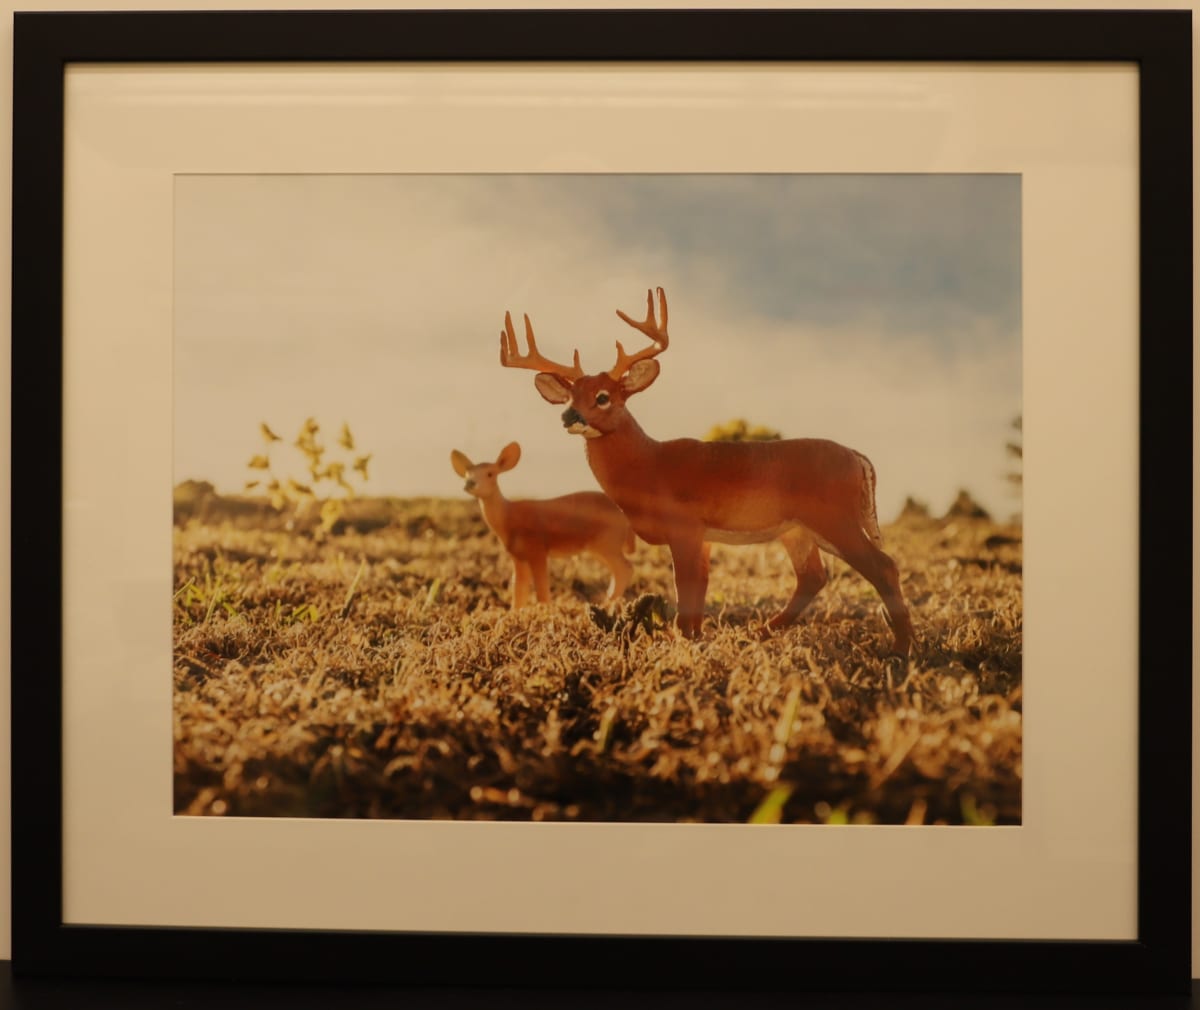 Deer by Samantha Pavelsek-Simmons  Image: "Deer," photograph by Samantha Pavelsek-Simmons, 2015